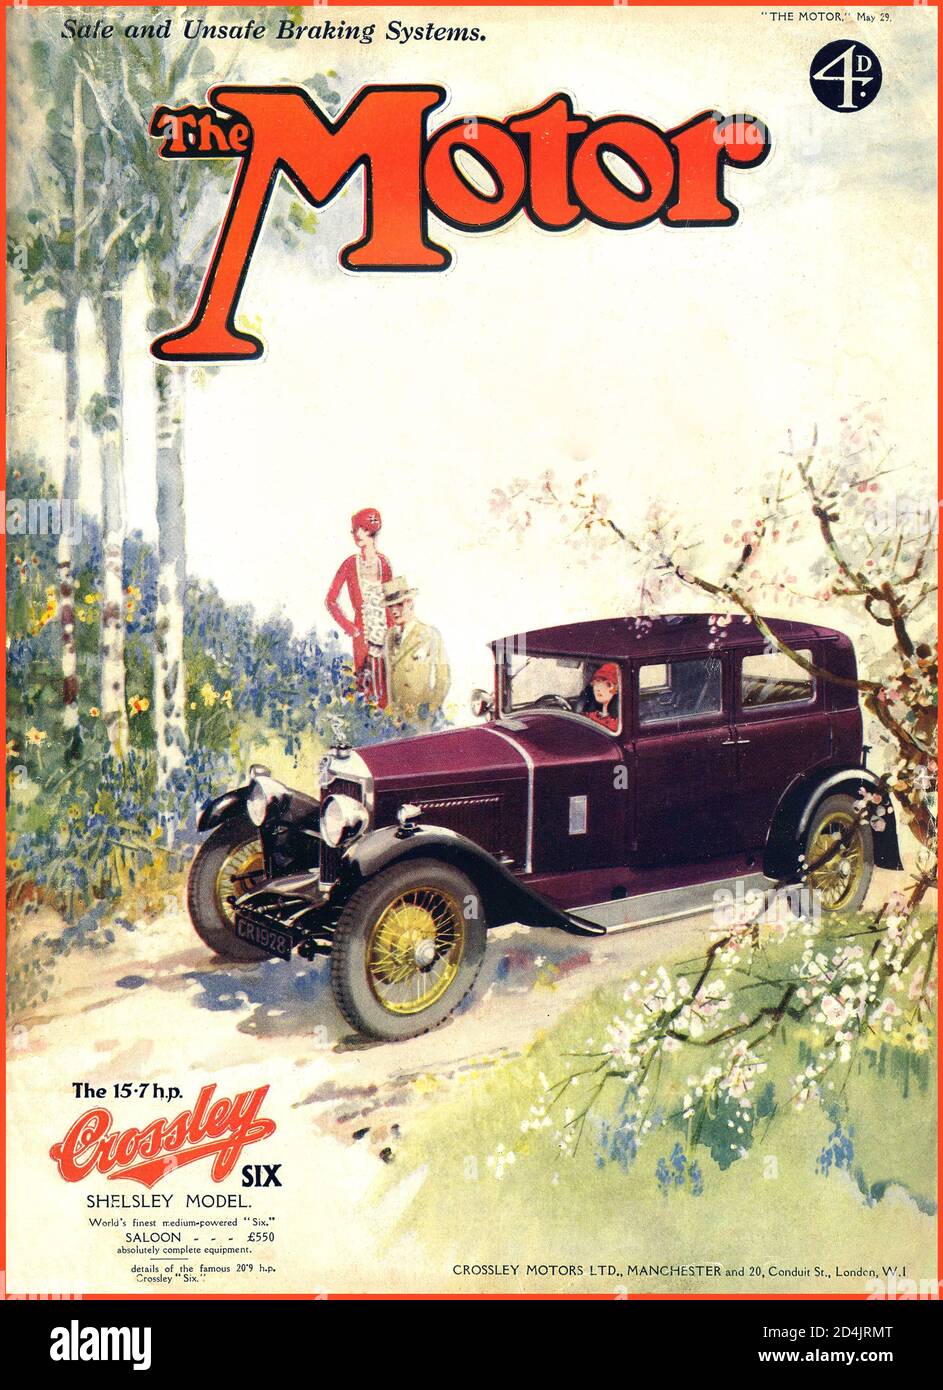 THE MOTOR 1920er Jahre Archiv Britisches Motormagazin Frontcover 15.7-ps Sechszylinder Shelsley Motor Auto, hergestellt von Crossley Motors Ltd, Gorton, Manchester, 1929. Stockfoto